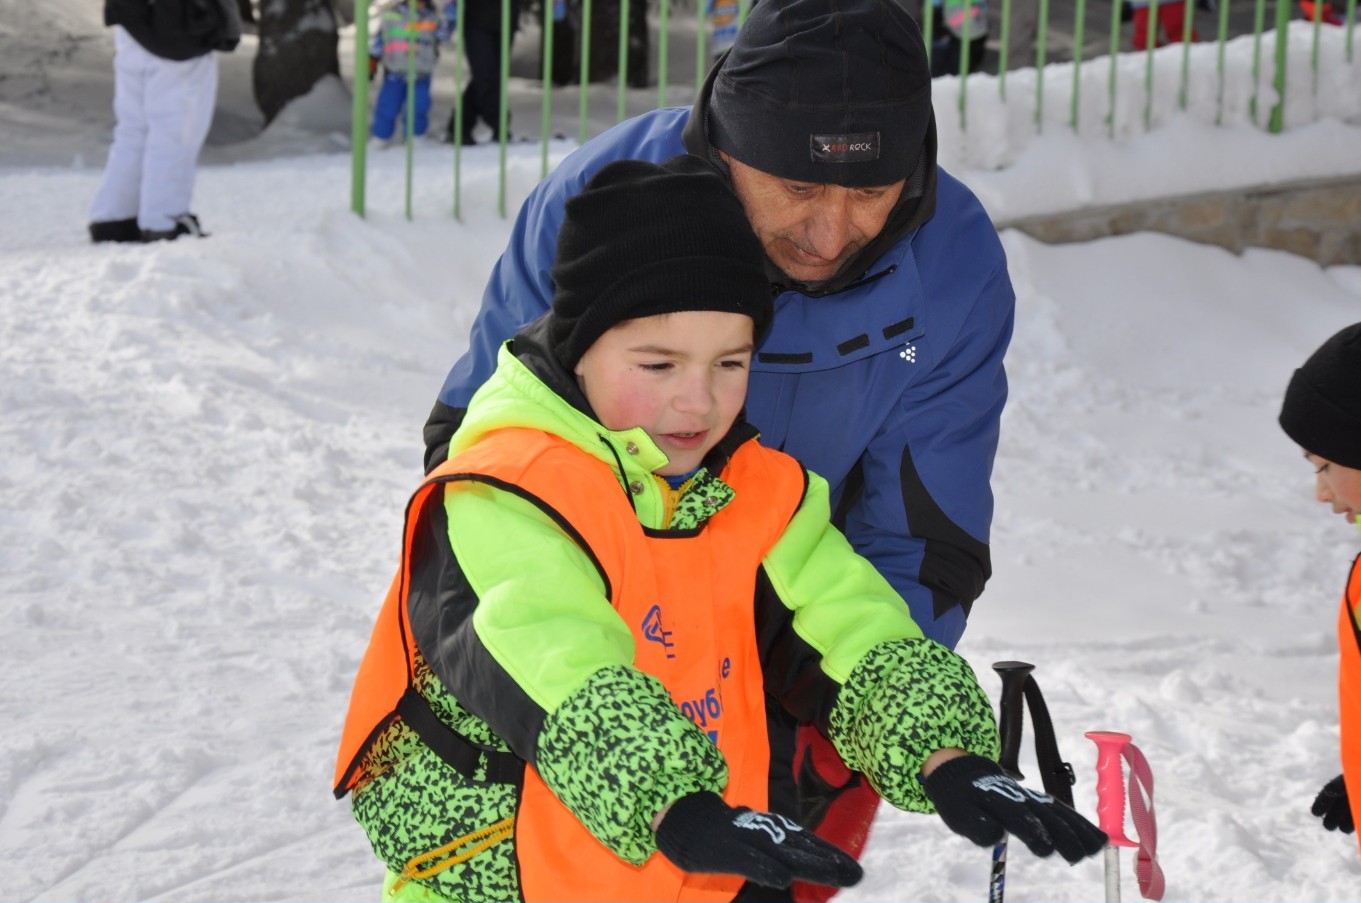 Азбукари учиха на ски деца без родителска грижа